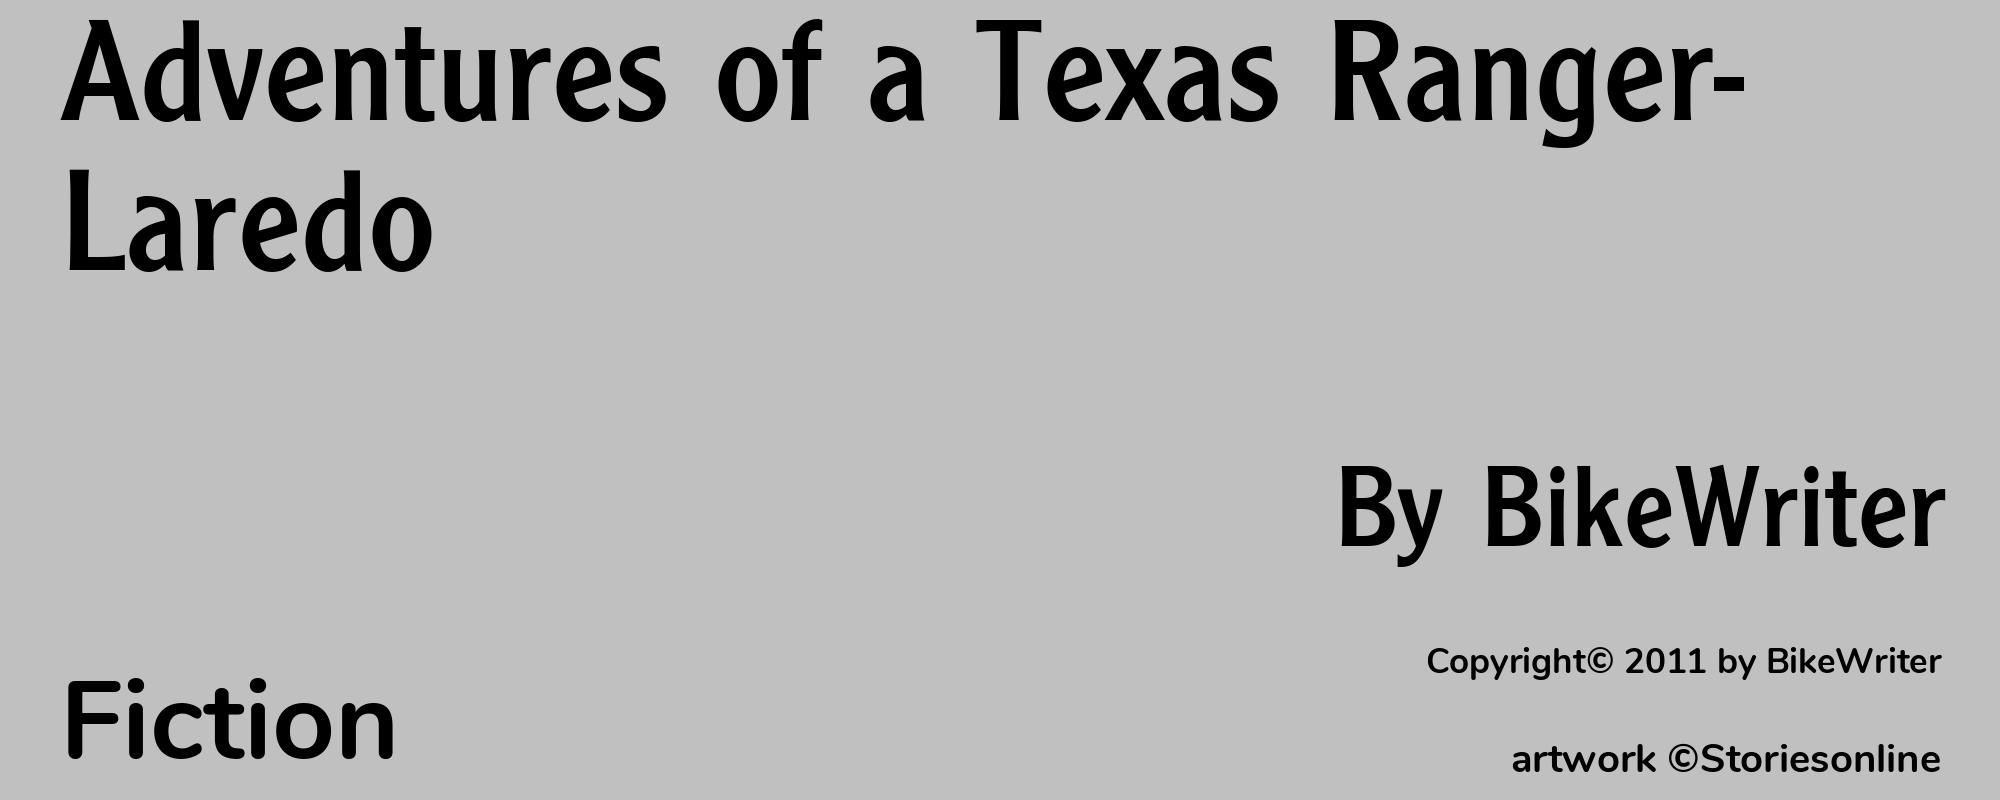 Adventures of a Texas Ranger- Laredo - Cover